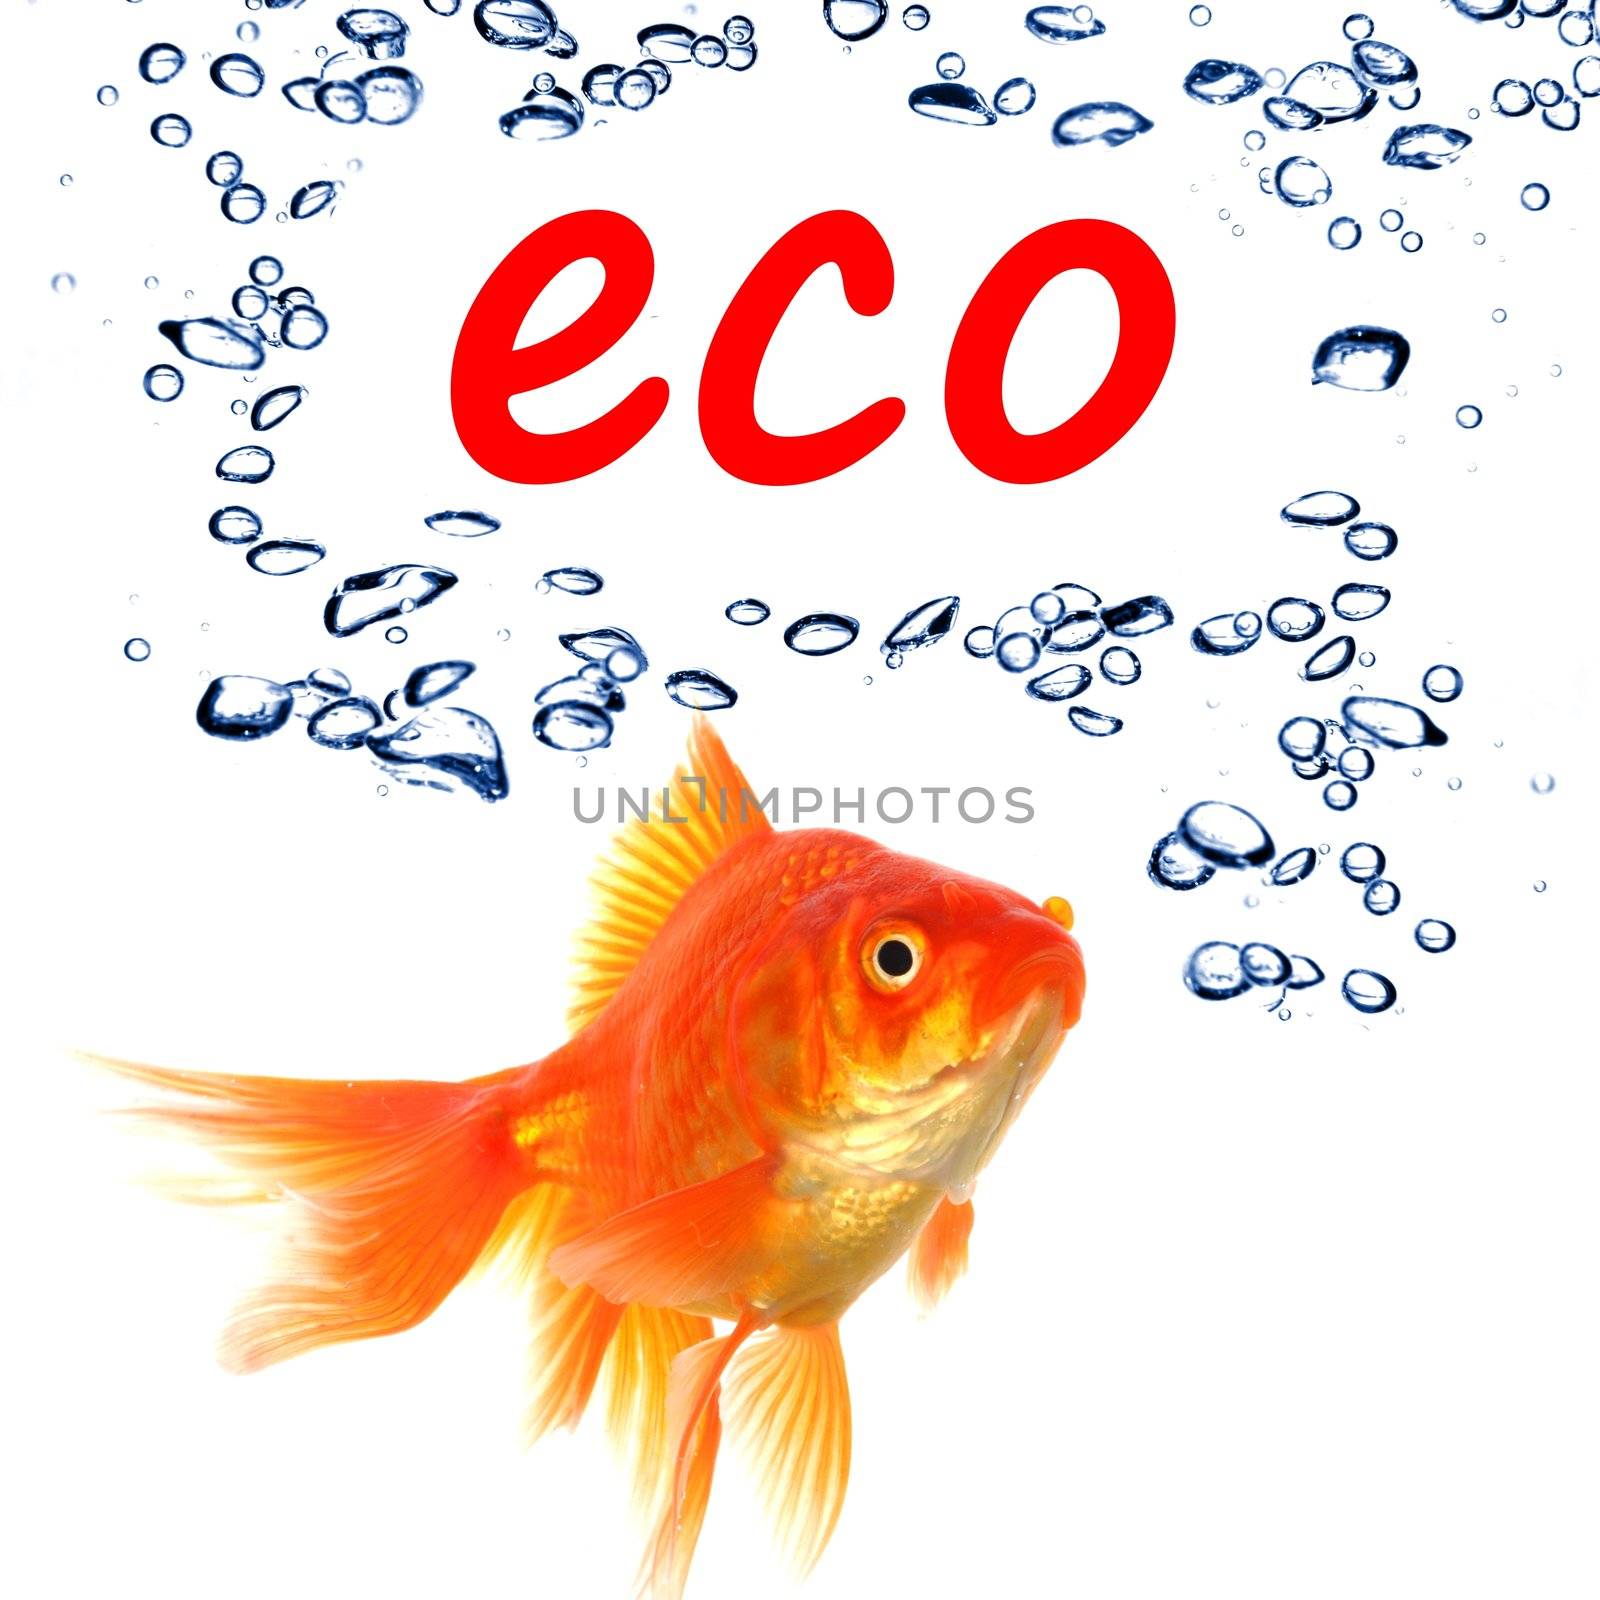 eco by gunnar3000